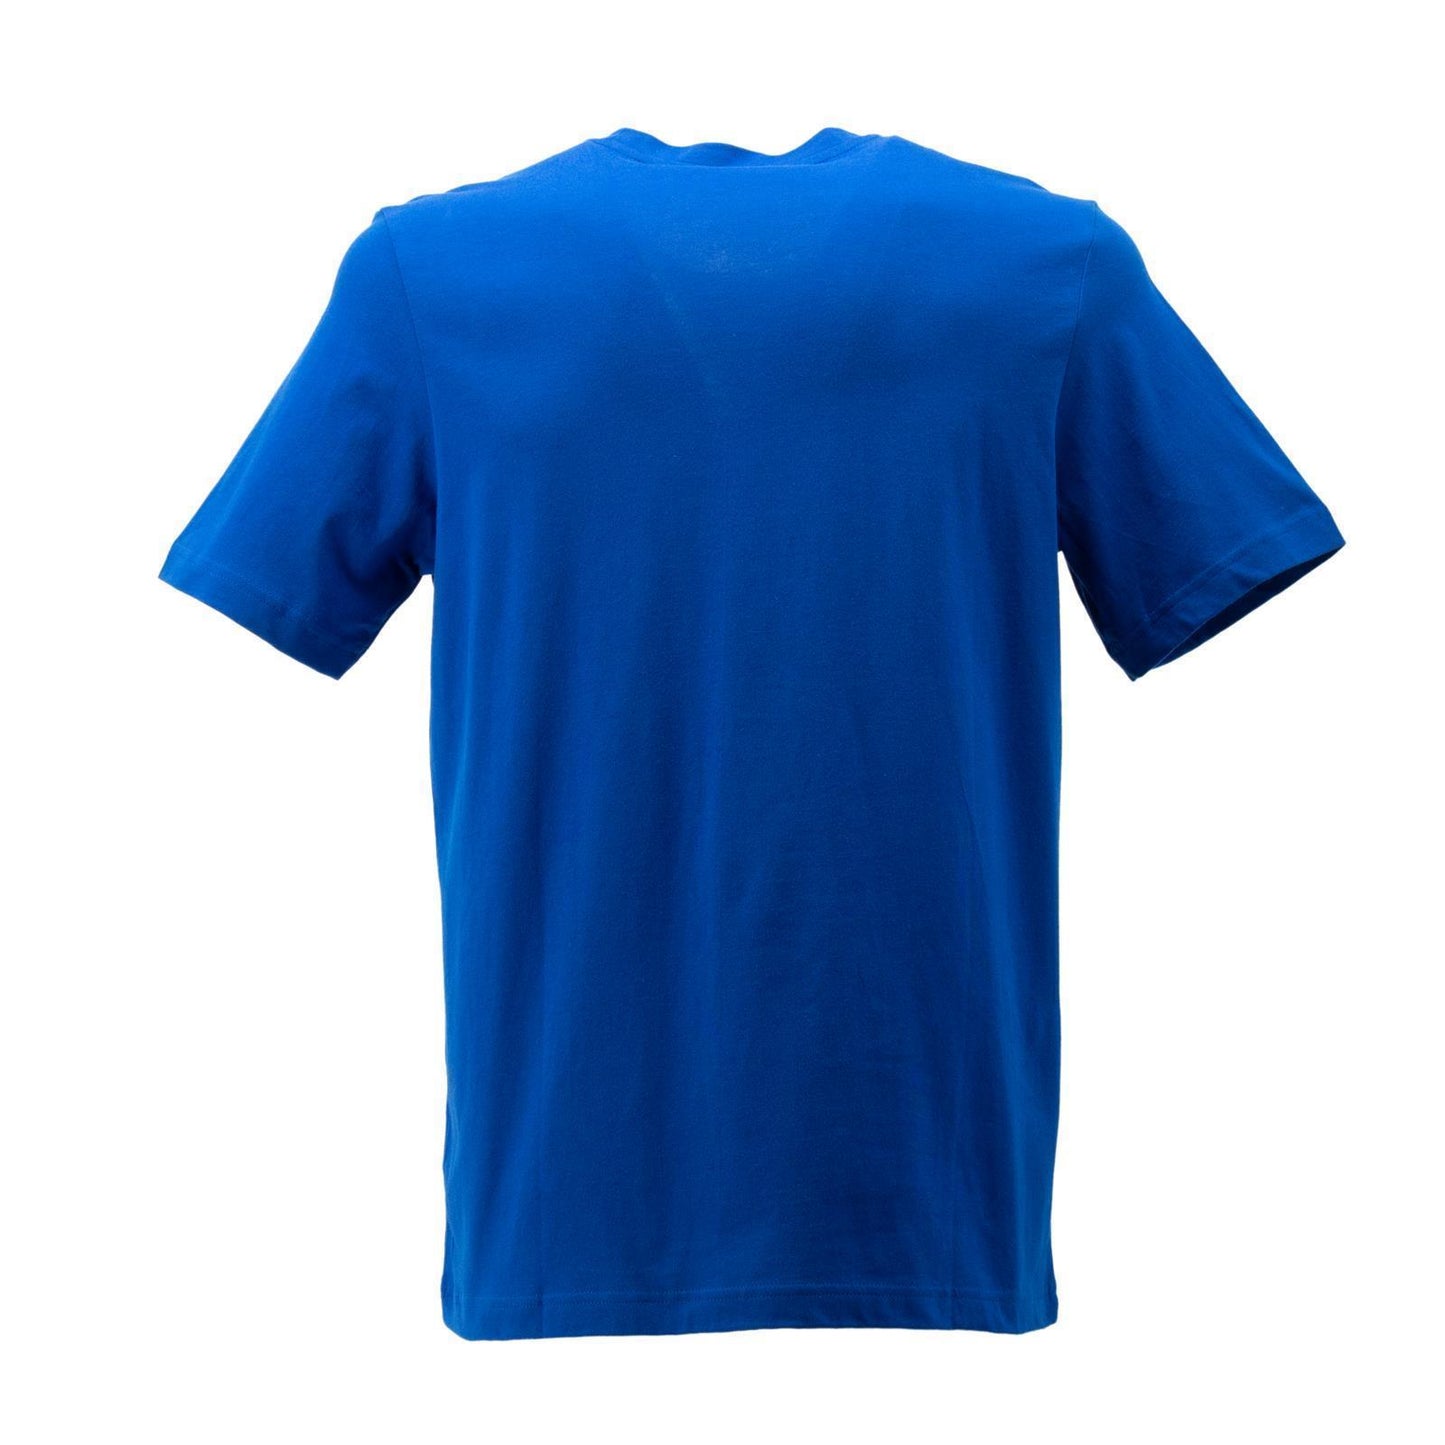 Adidas OSR TR Training Tee T-Shirt Herren Sportshirt Baumwolle blau DZ9552